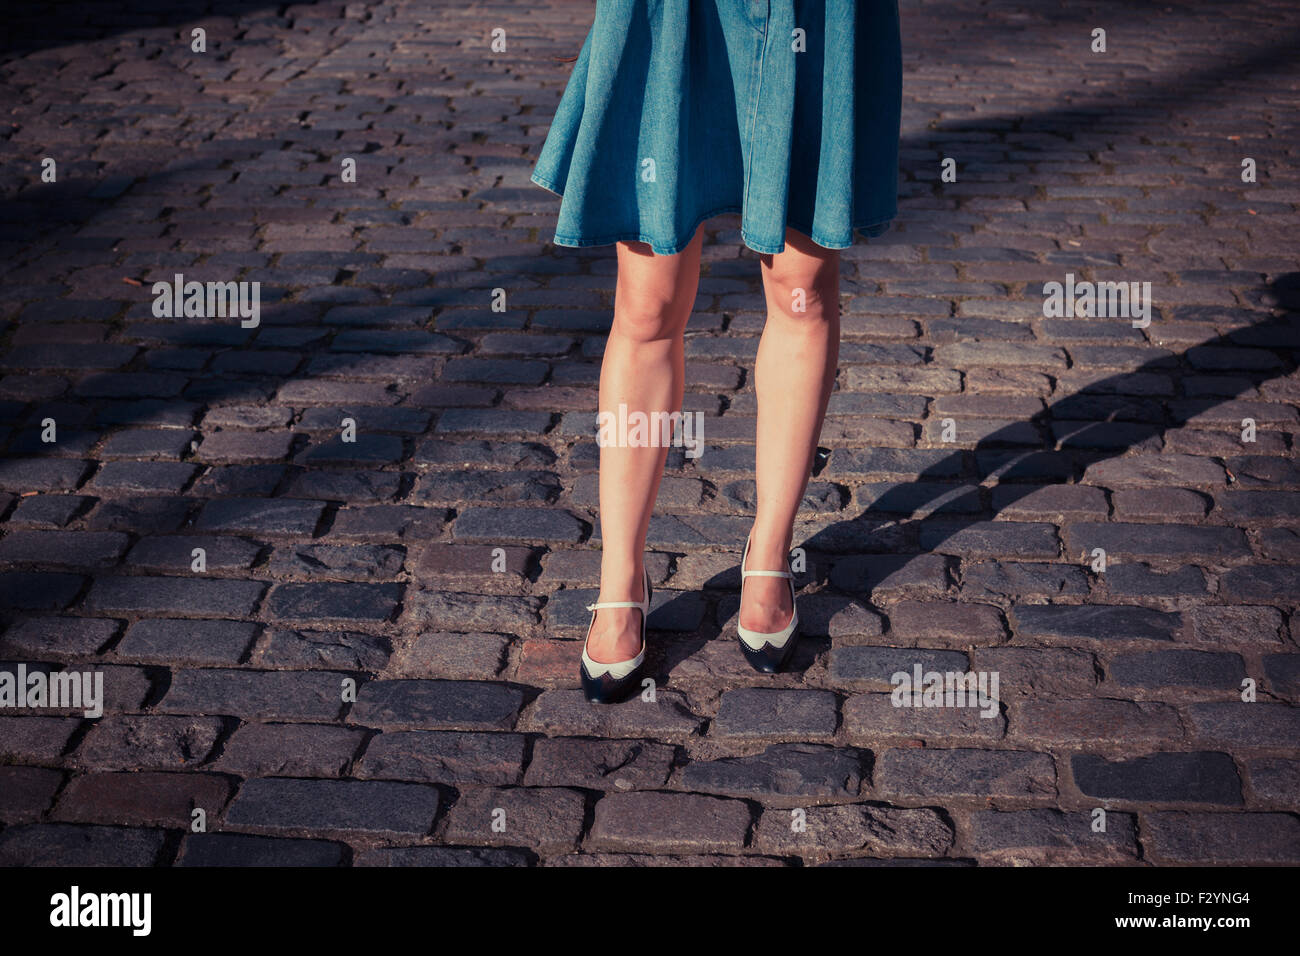 Una giovane donna che indossa un mantello e scarpe retrò sta camminando su una strada acciottolata al tramonto Foto Stock